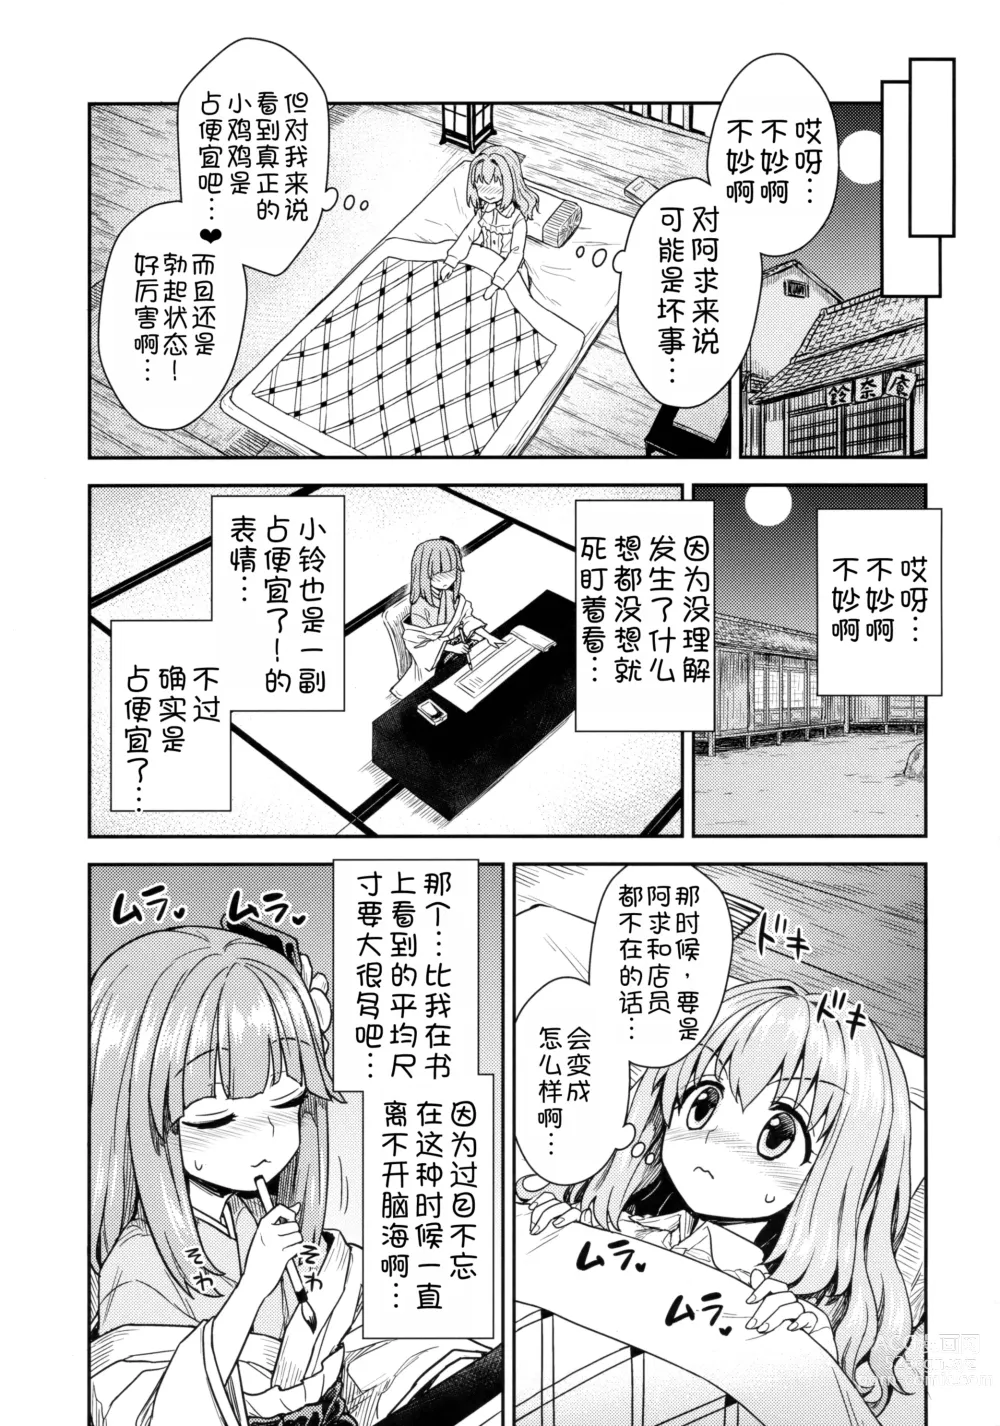 Page 5 of doujinshi Akyuu to Kosuzu no Itte miyou Yatte miyou